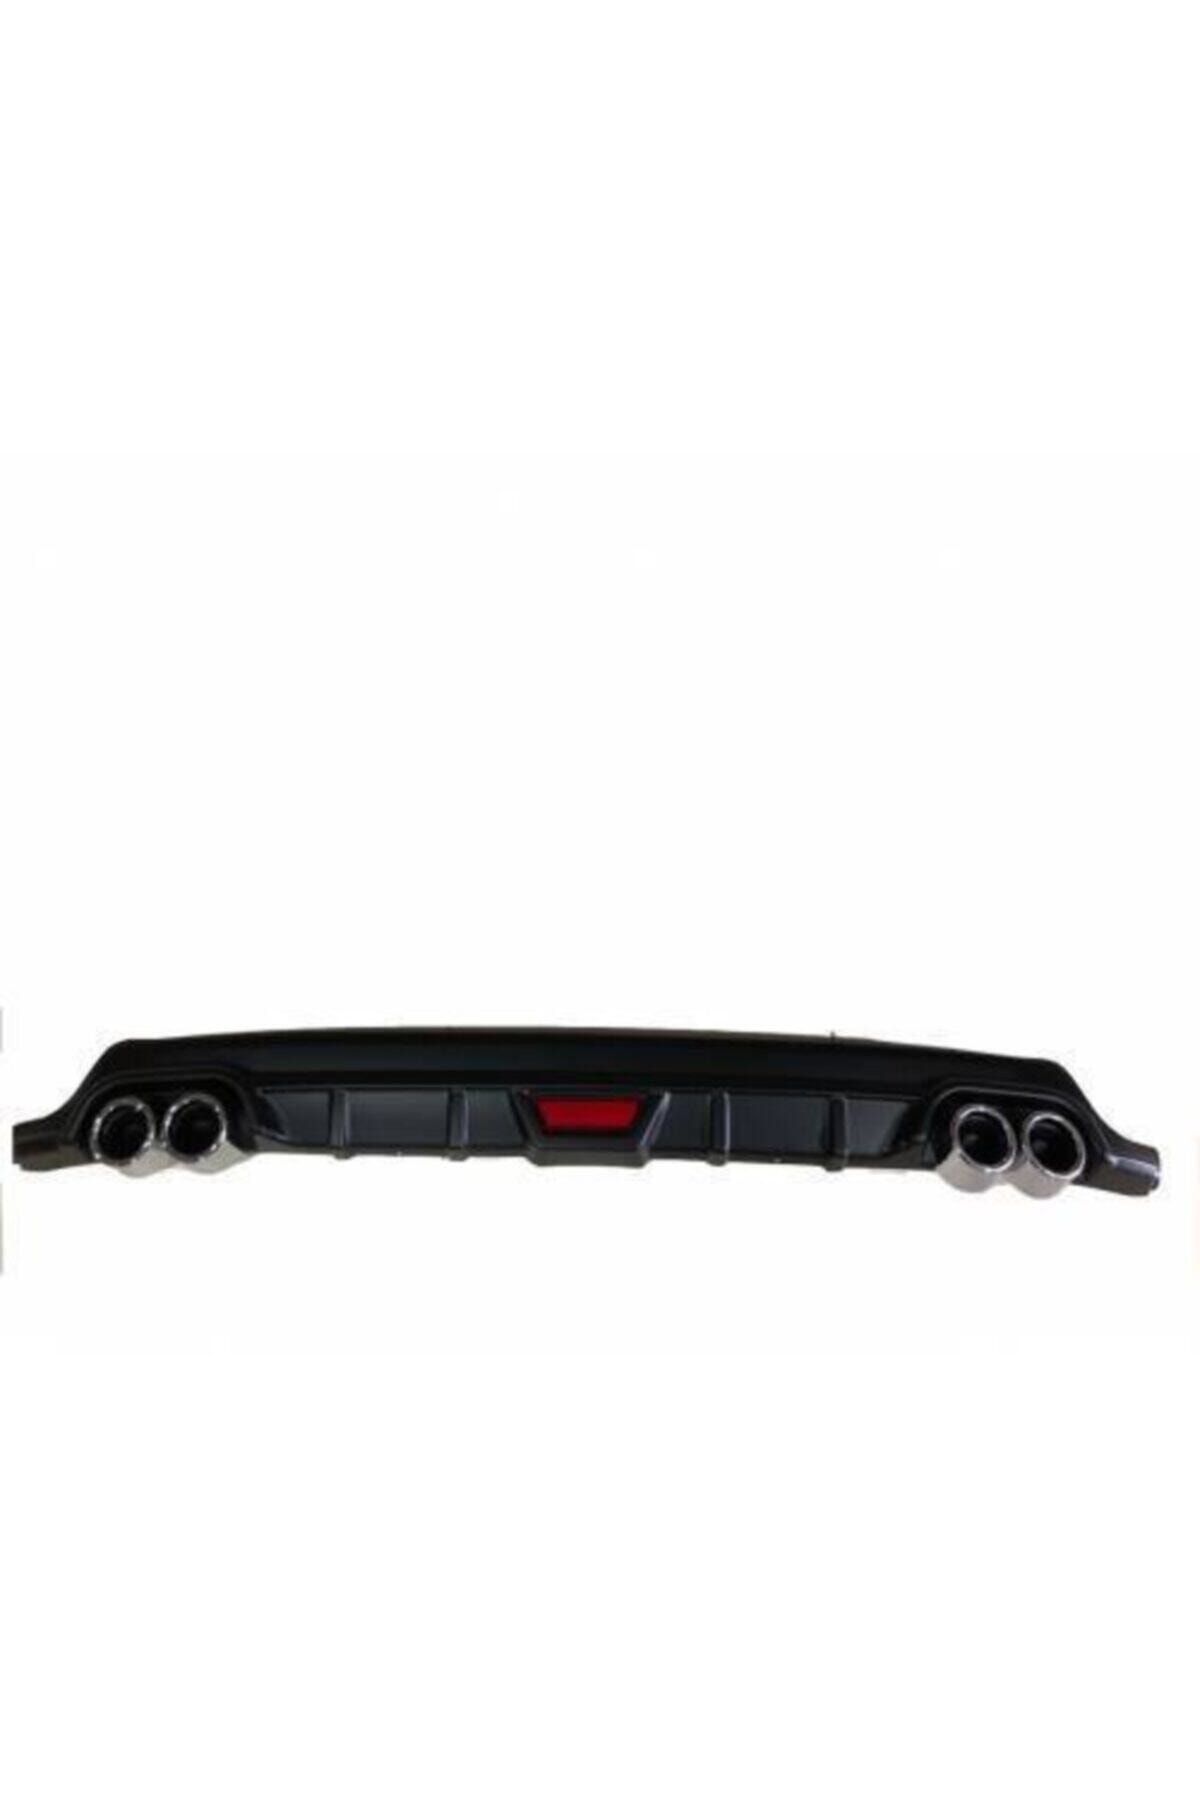 OEM Ford Focus 3 Arka Tampon Eki Çift Çıkış Difüzör 2012+